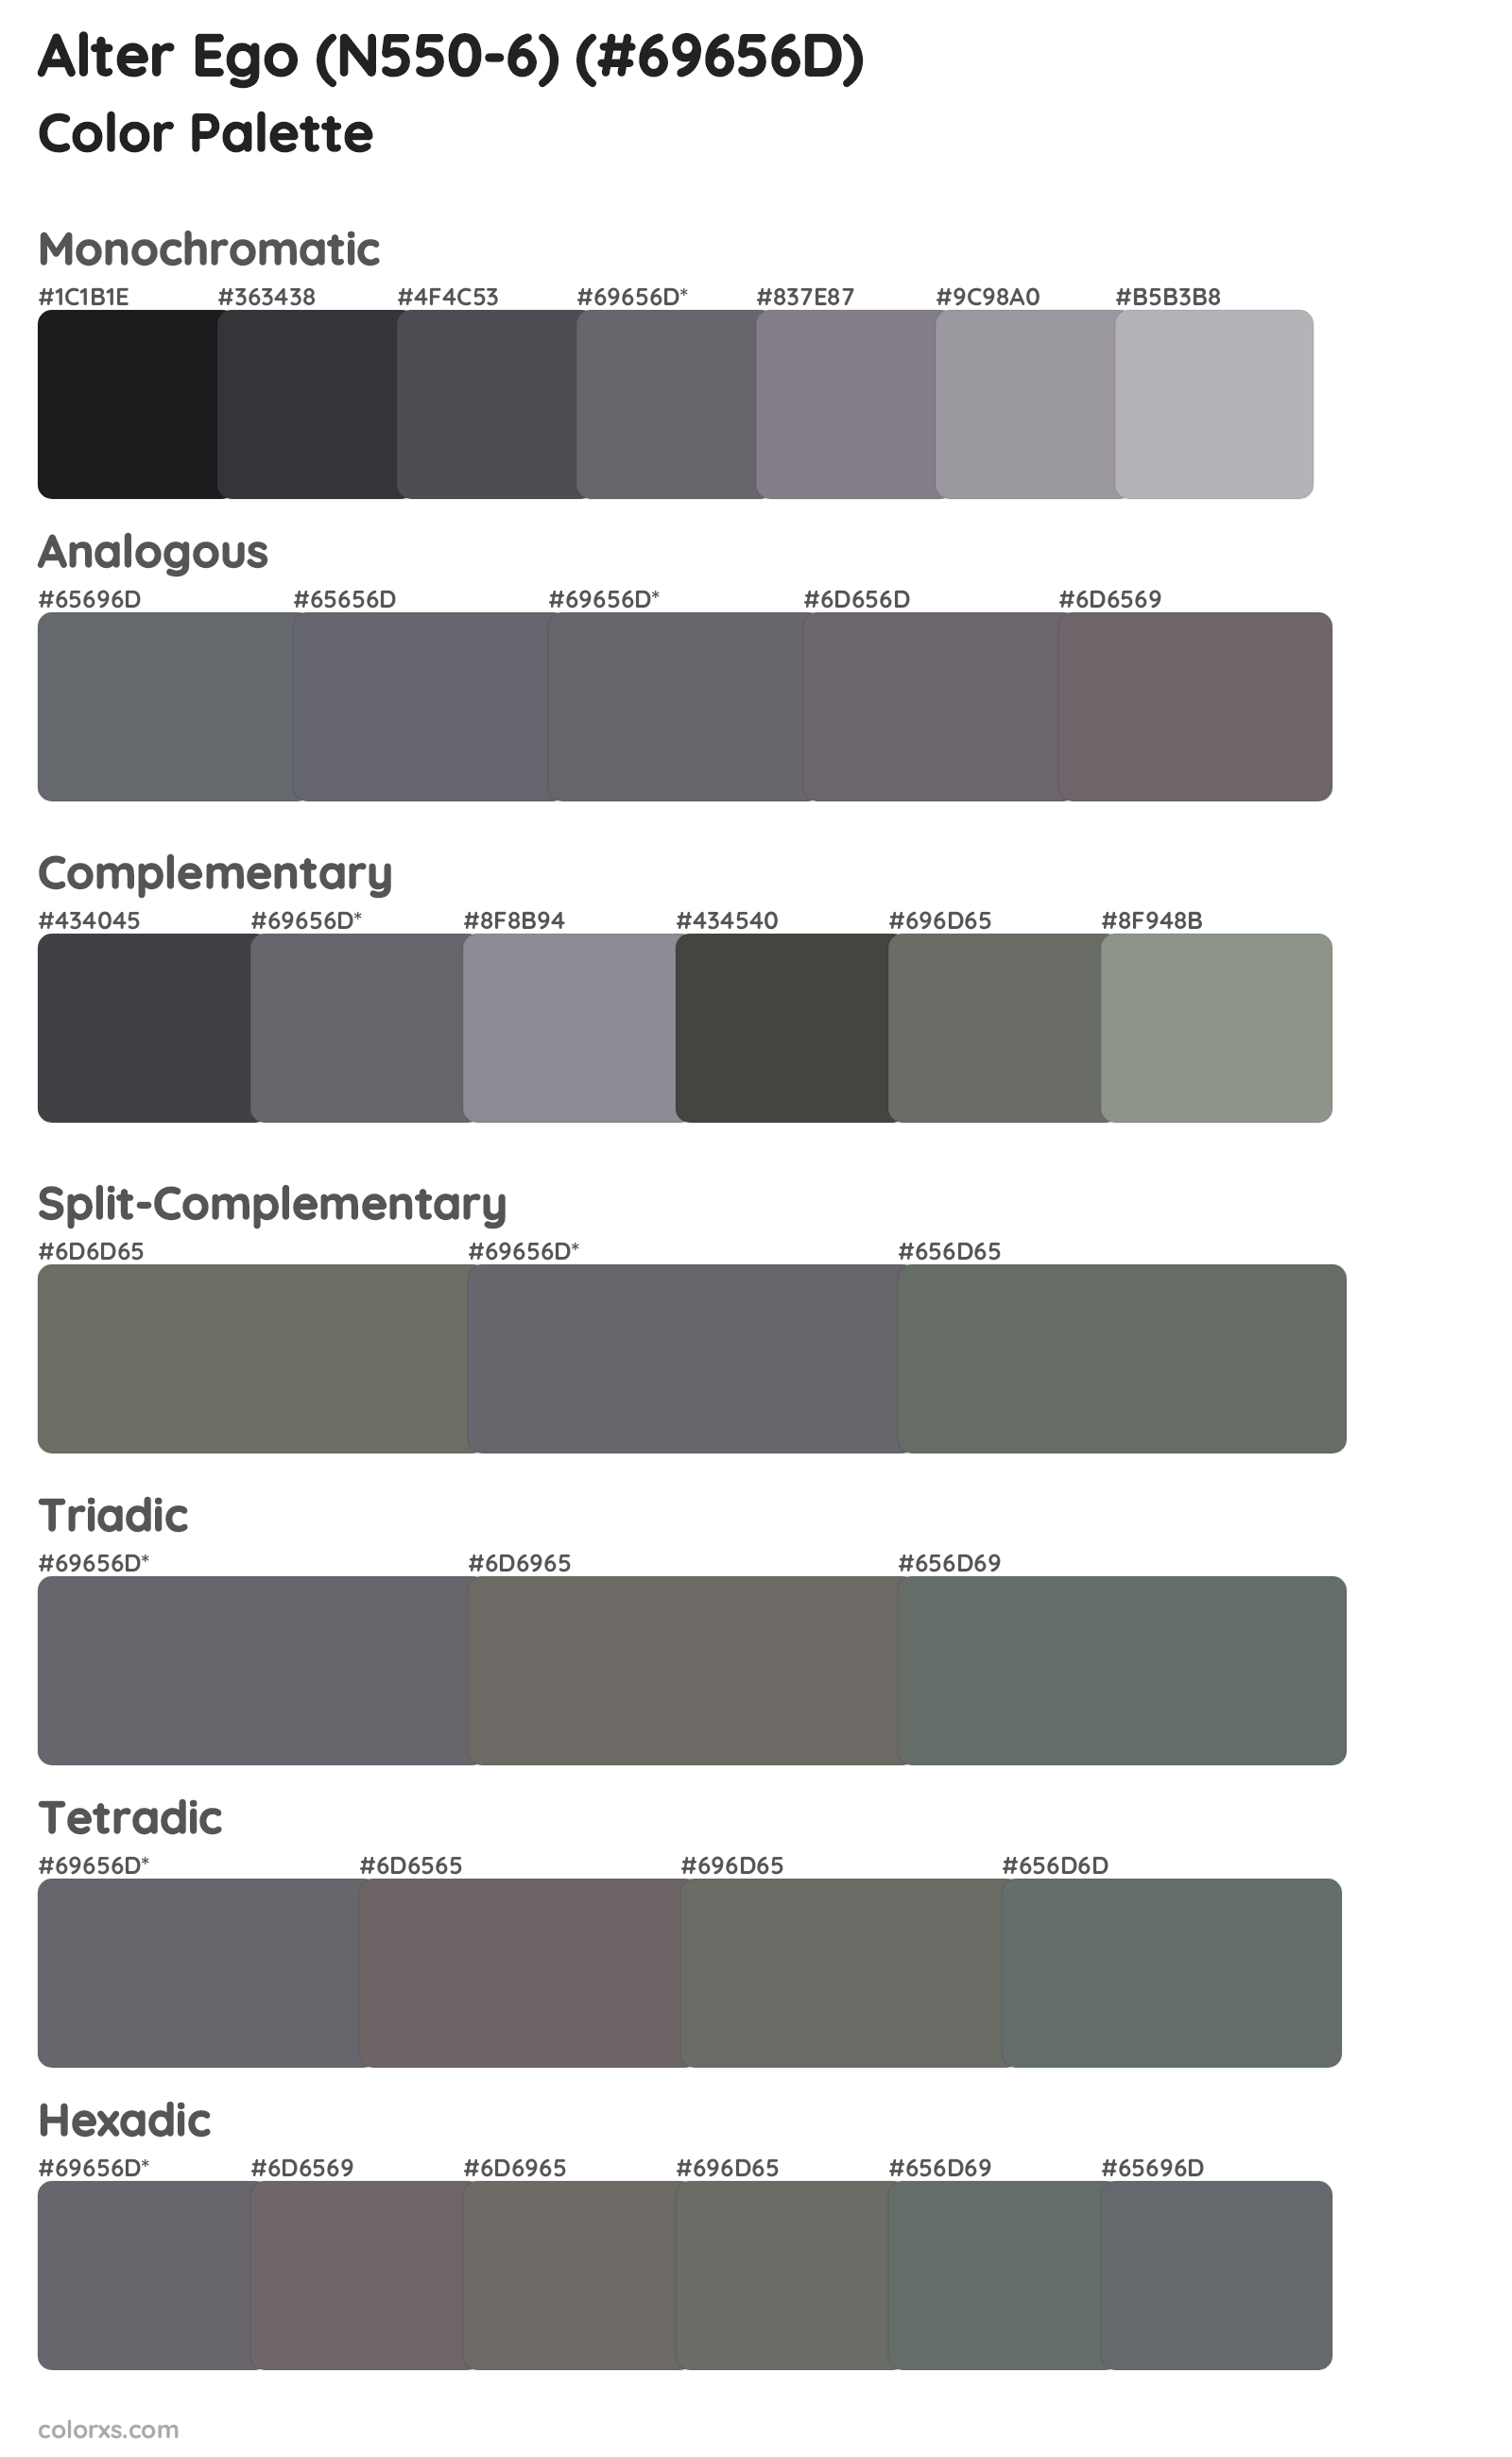 Alter Ego (N550-6) Color Scheme Palettes